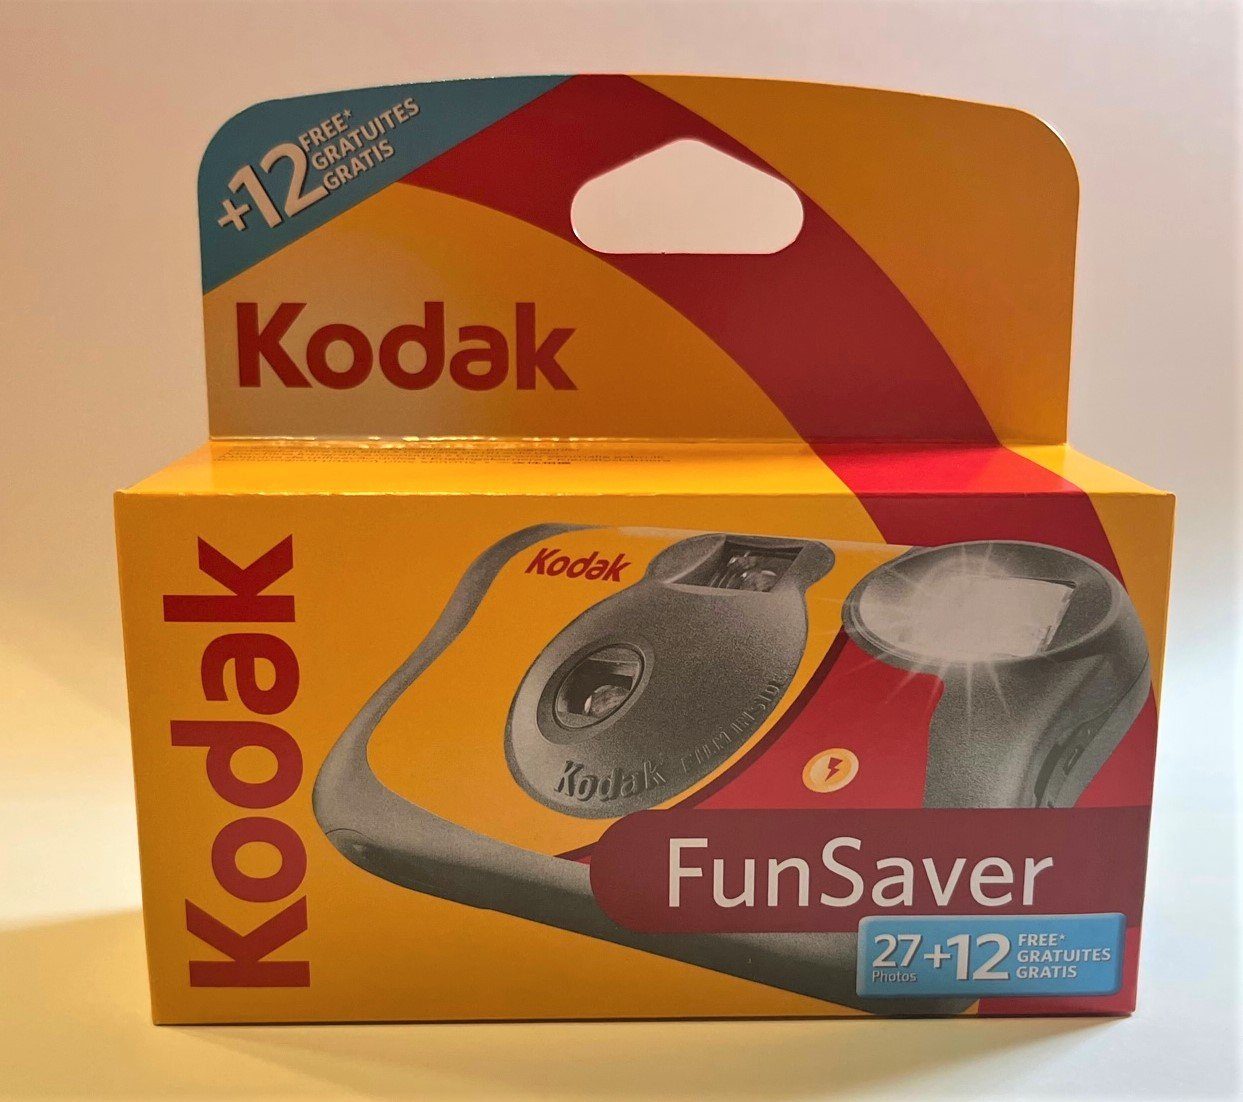 Saver x 27+12 Fun Einwegkamera Kodak Kodak 800 ISo 3 Einwegkamera